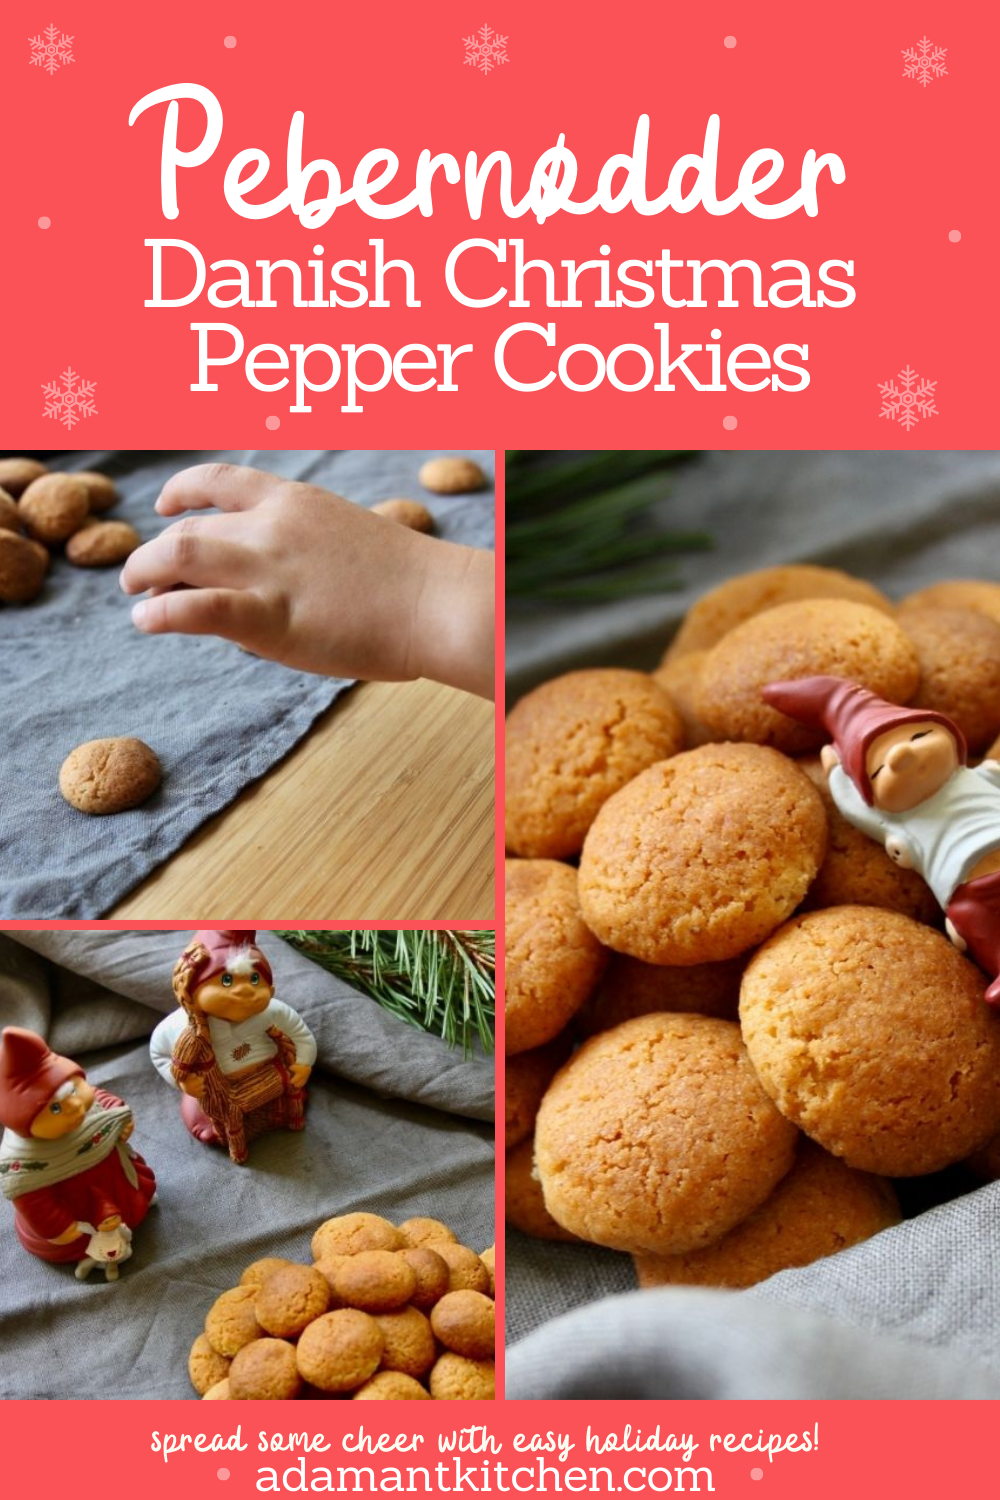 丹麦Pebernødder ~学习如何从头开始制作这款传统的斯堪的纳维亚圣诞饼干。